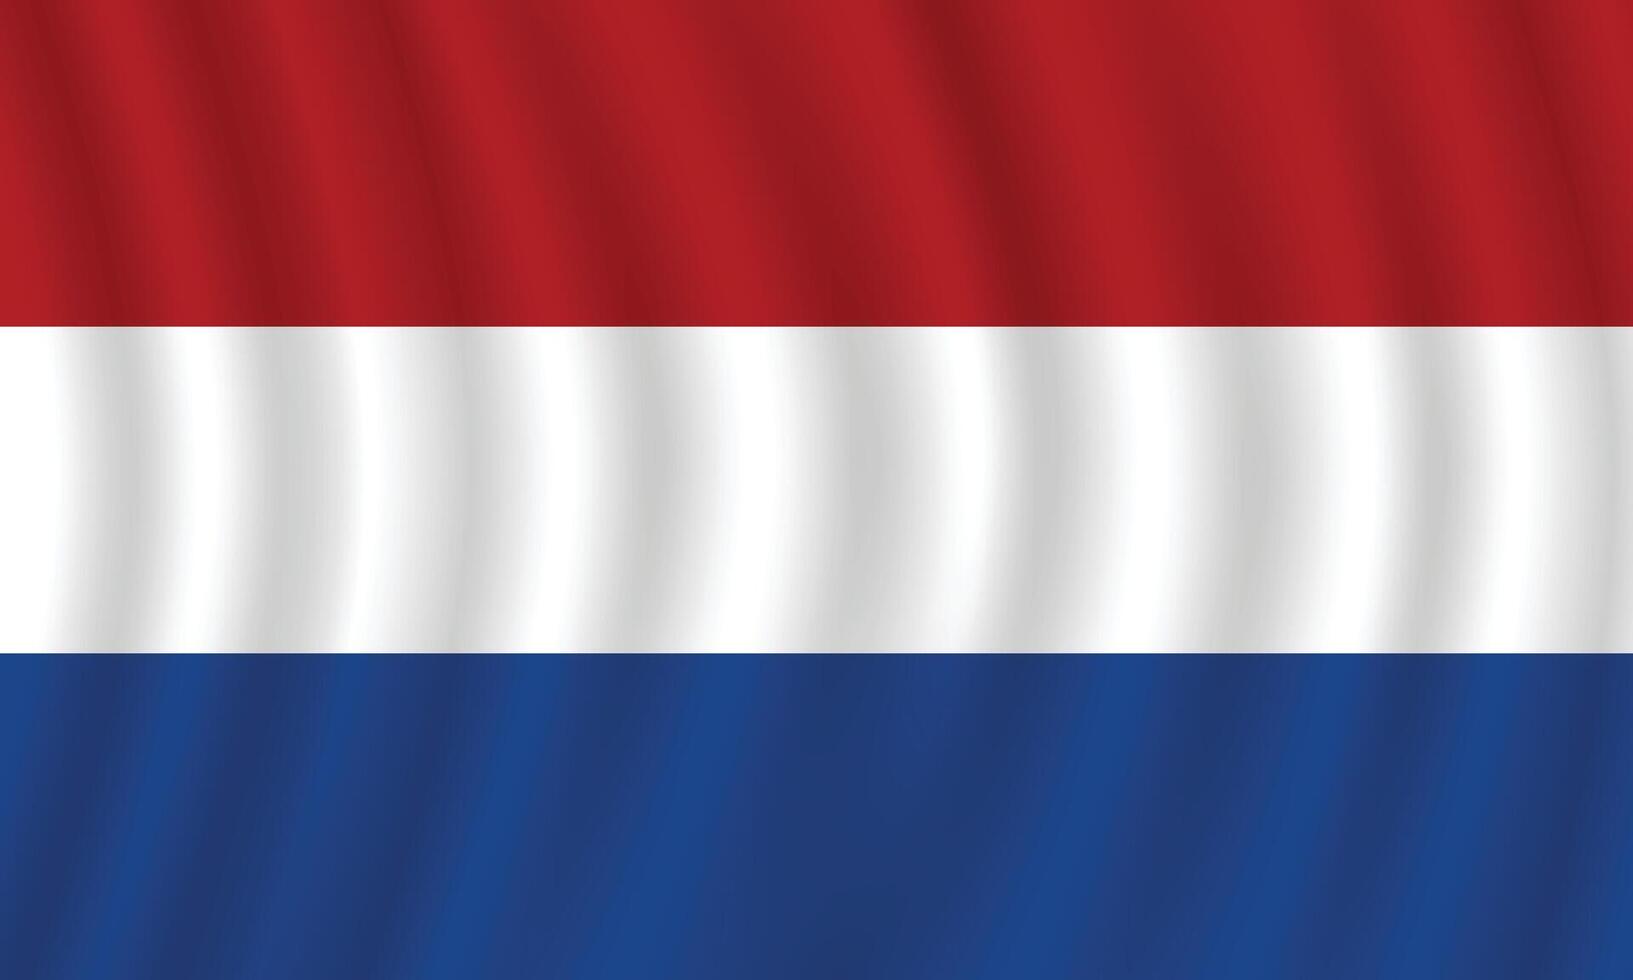 plano ilustración de el Países Bajos nacional bandera. Países Bajos bandera diseño. Países Bajos ola bandera. vector